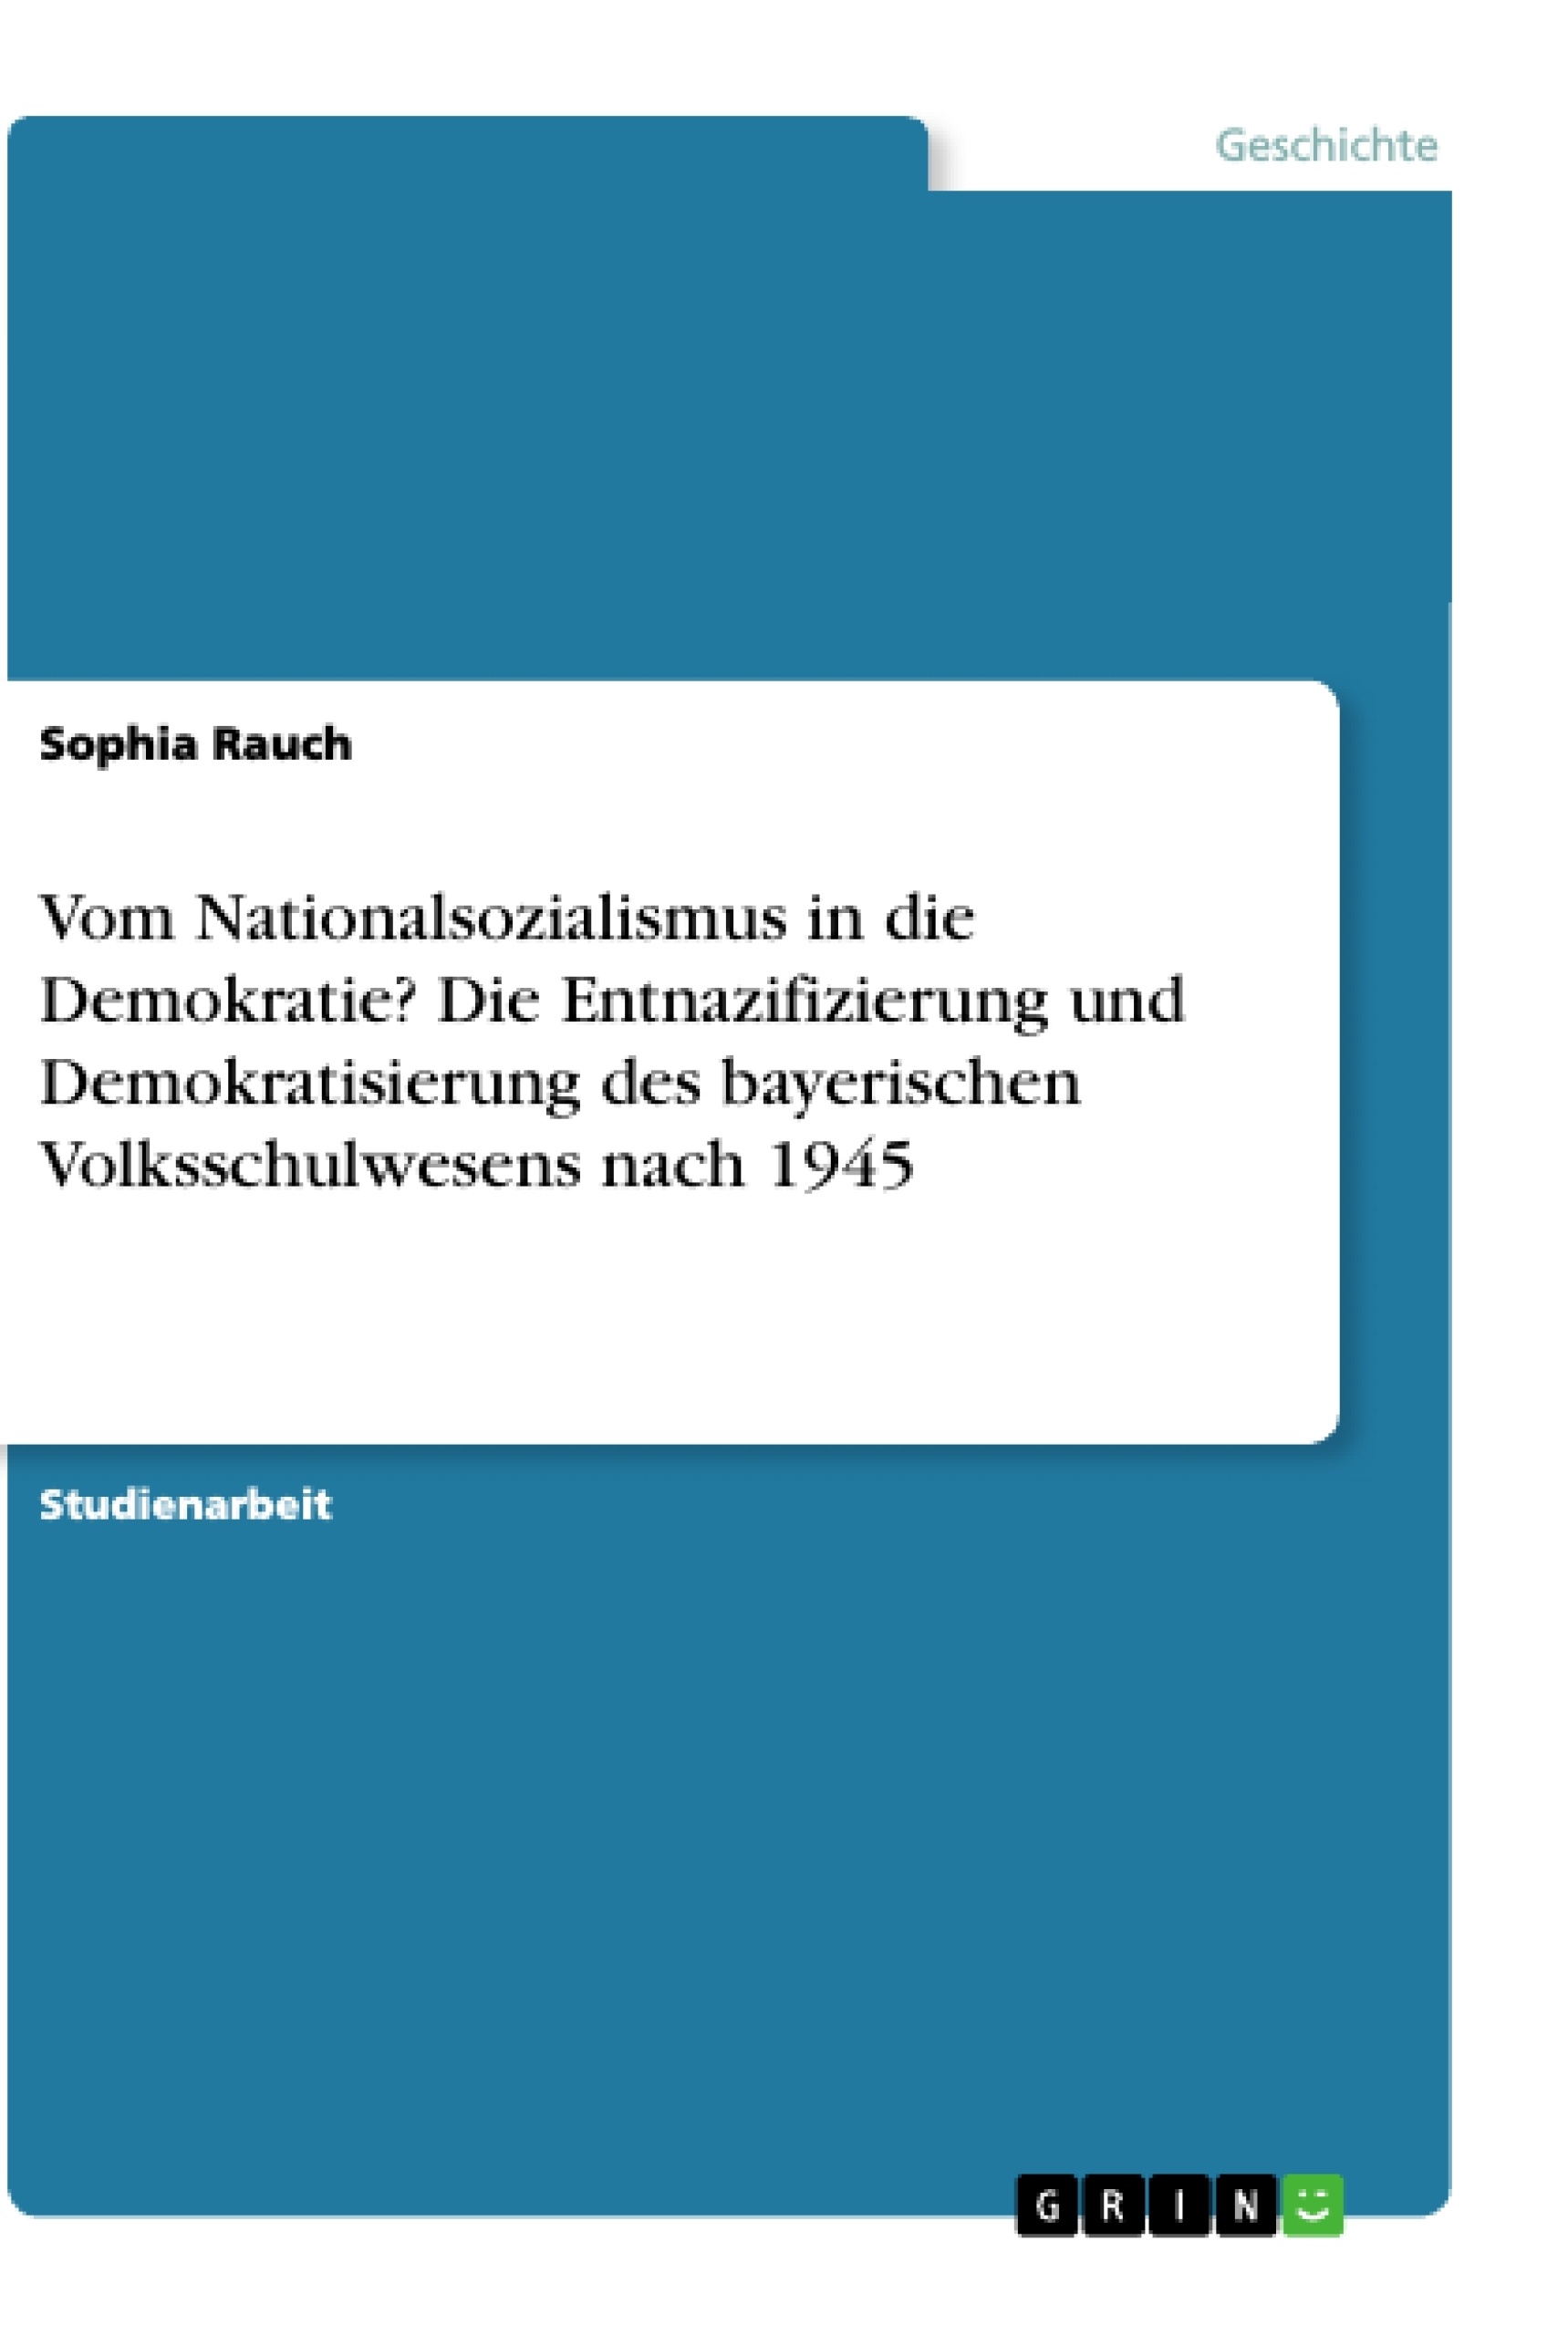 Titre: Vom Nationalsozialismus in die Demokratie? Die Entnazifizierung und Demokratisierung des bayerischen Volksschulwesens nach 1945